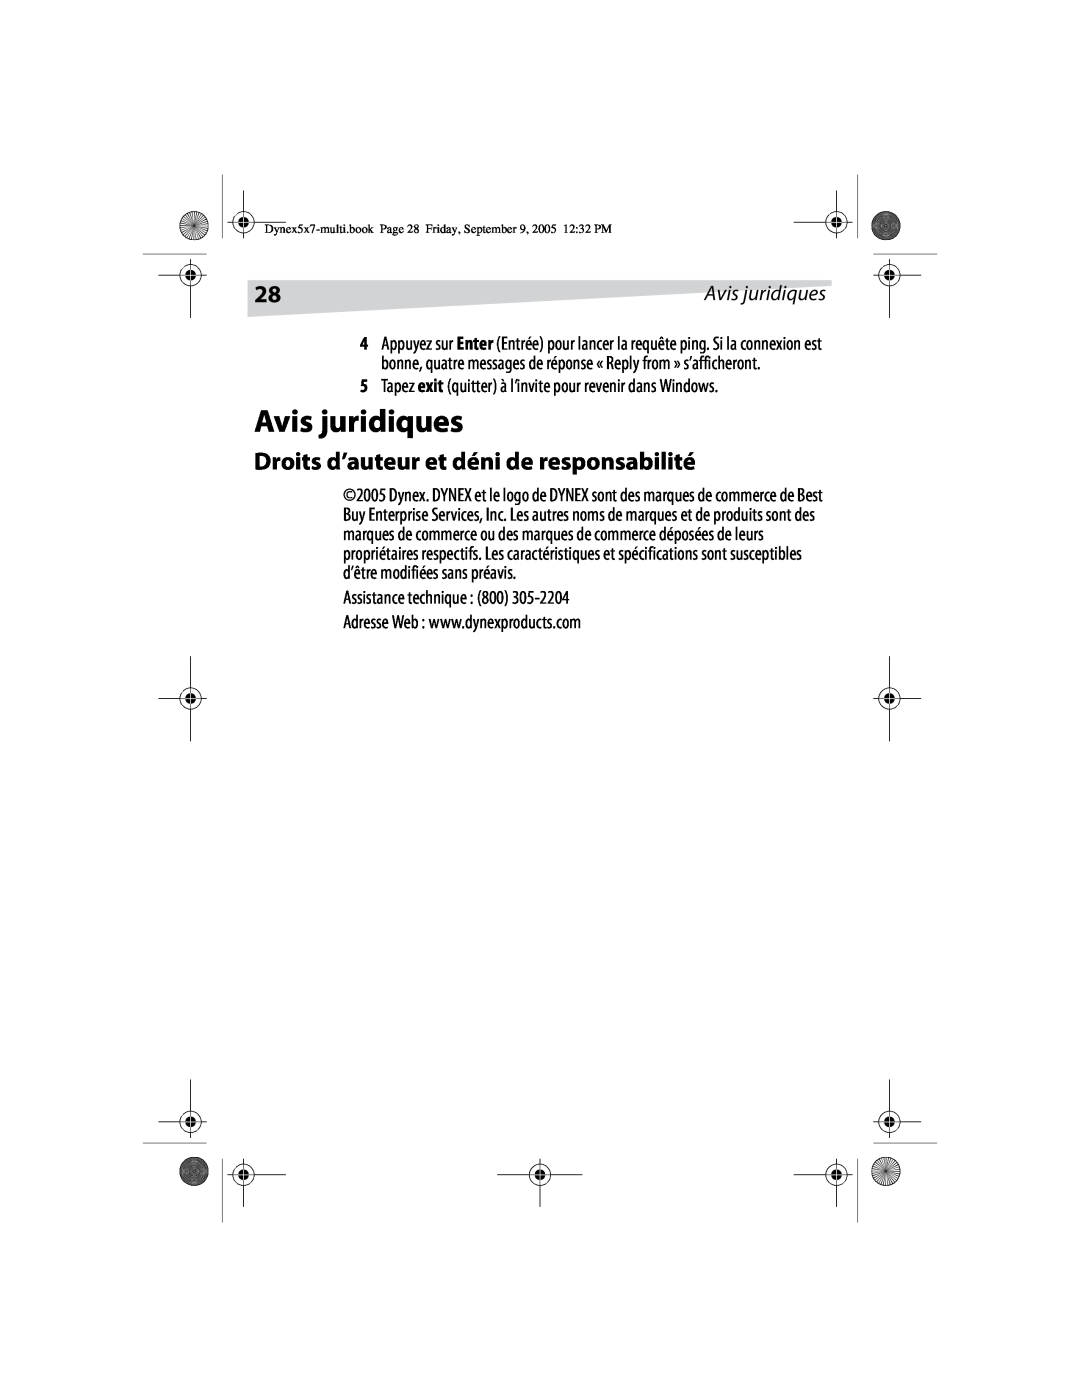 Dynex DX-E101 manual Avis juridiques, Droits d’auteur et déni de responsabilité, Assistance technique 800 